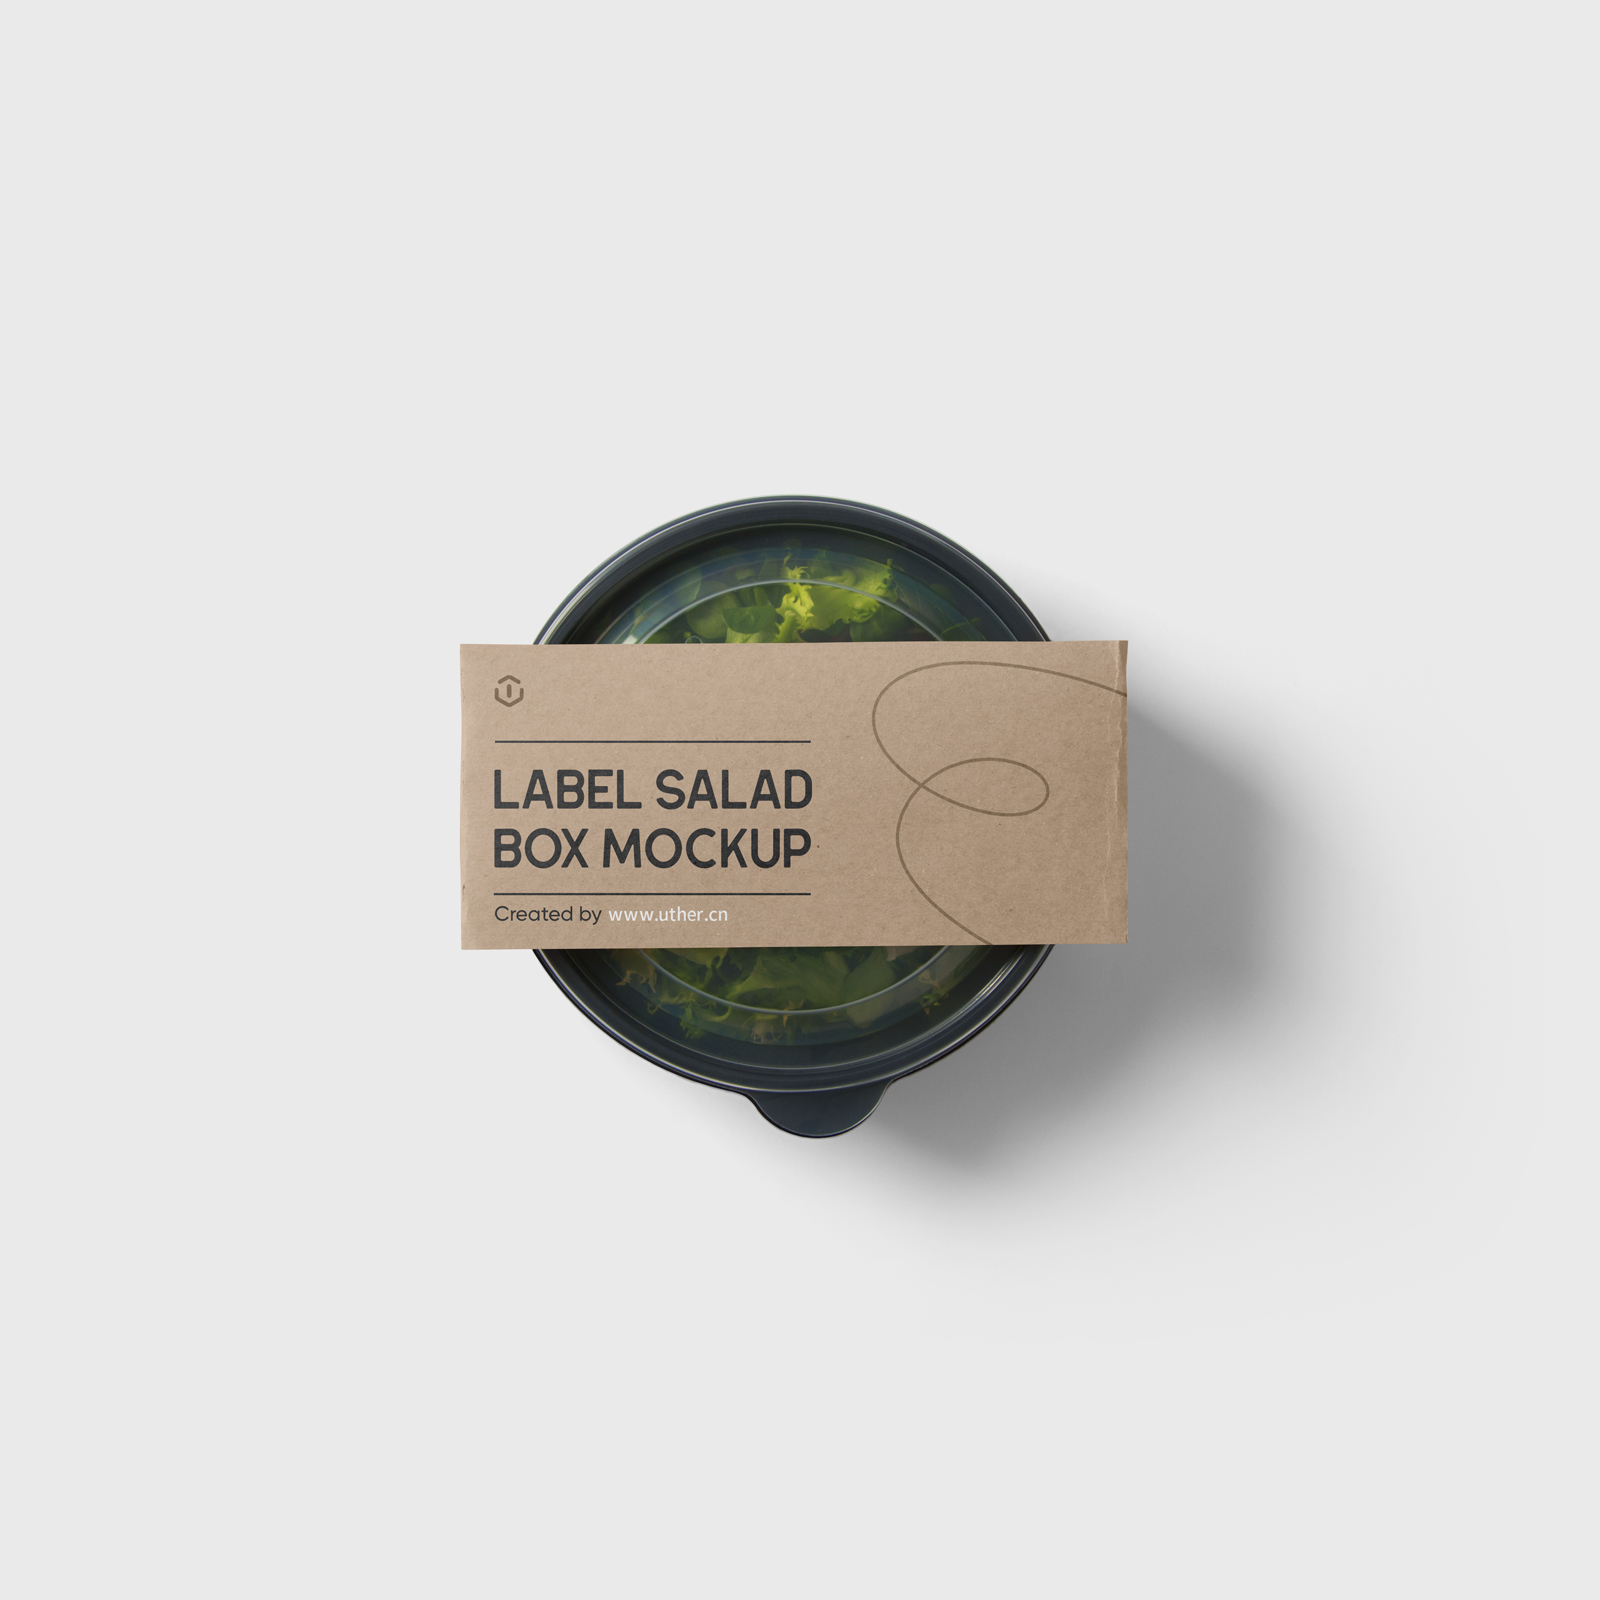 高质量沙拉包装盒样机模型Label Salad Box Mockup .psd素材